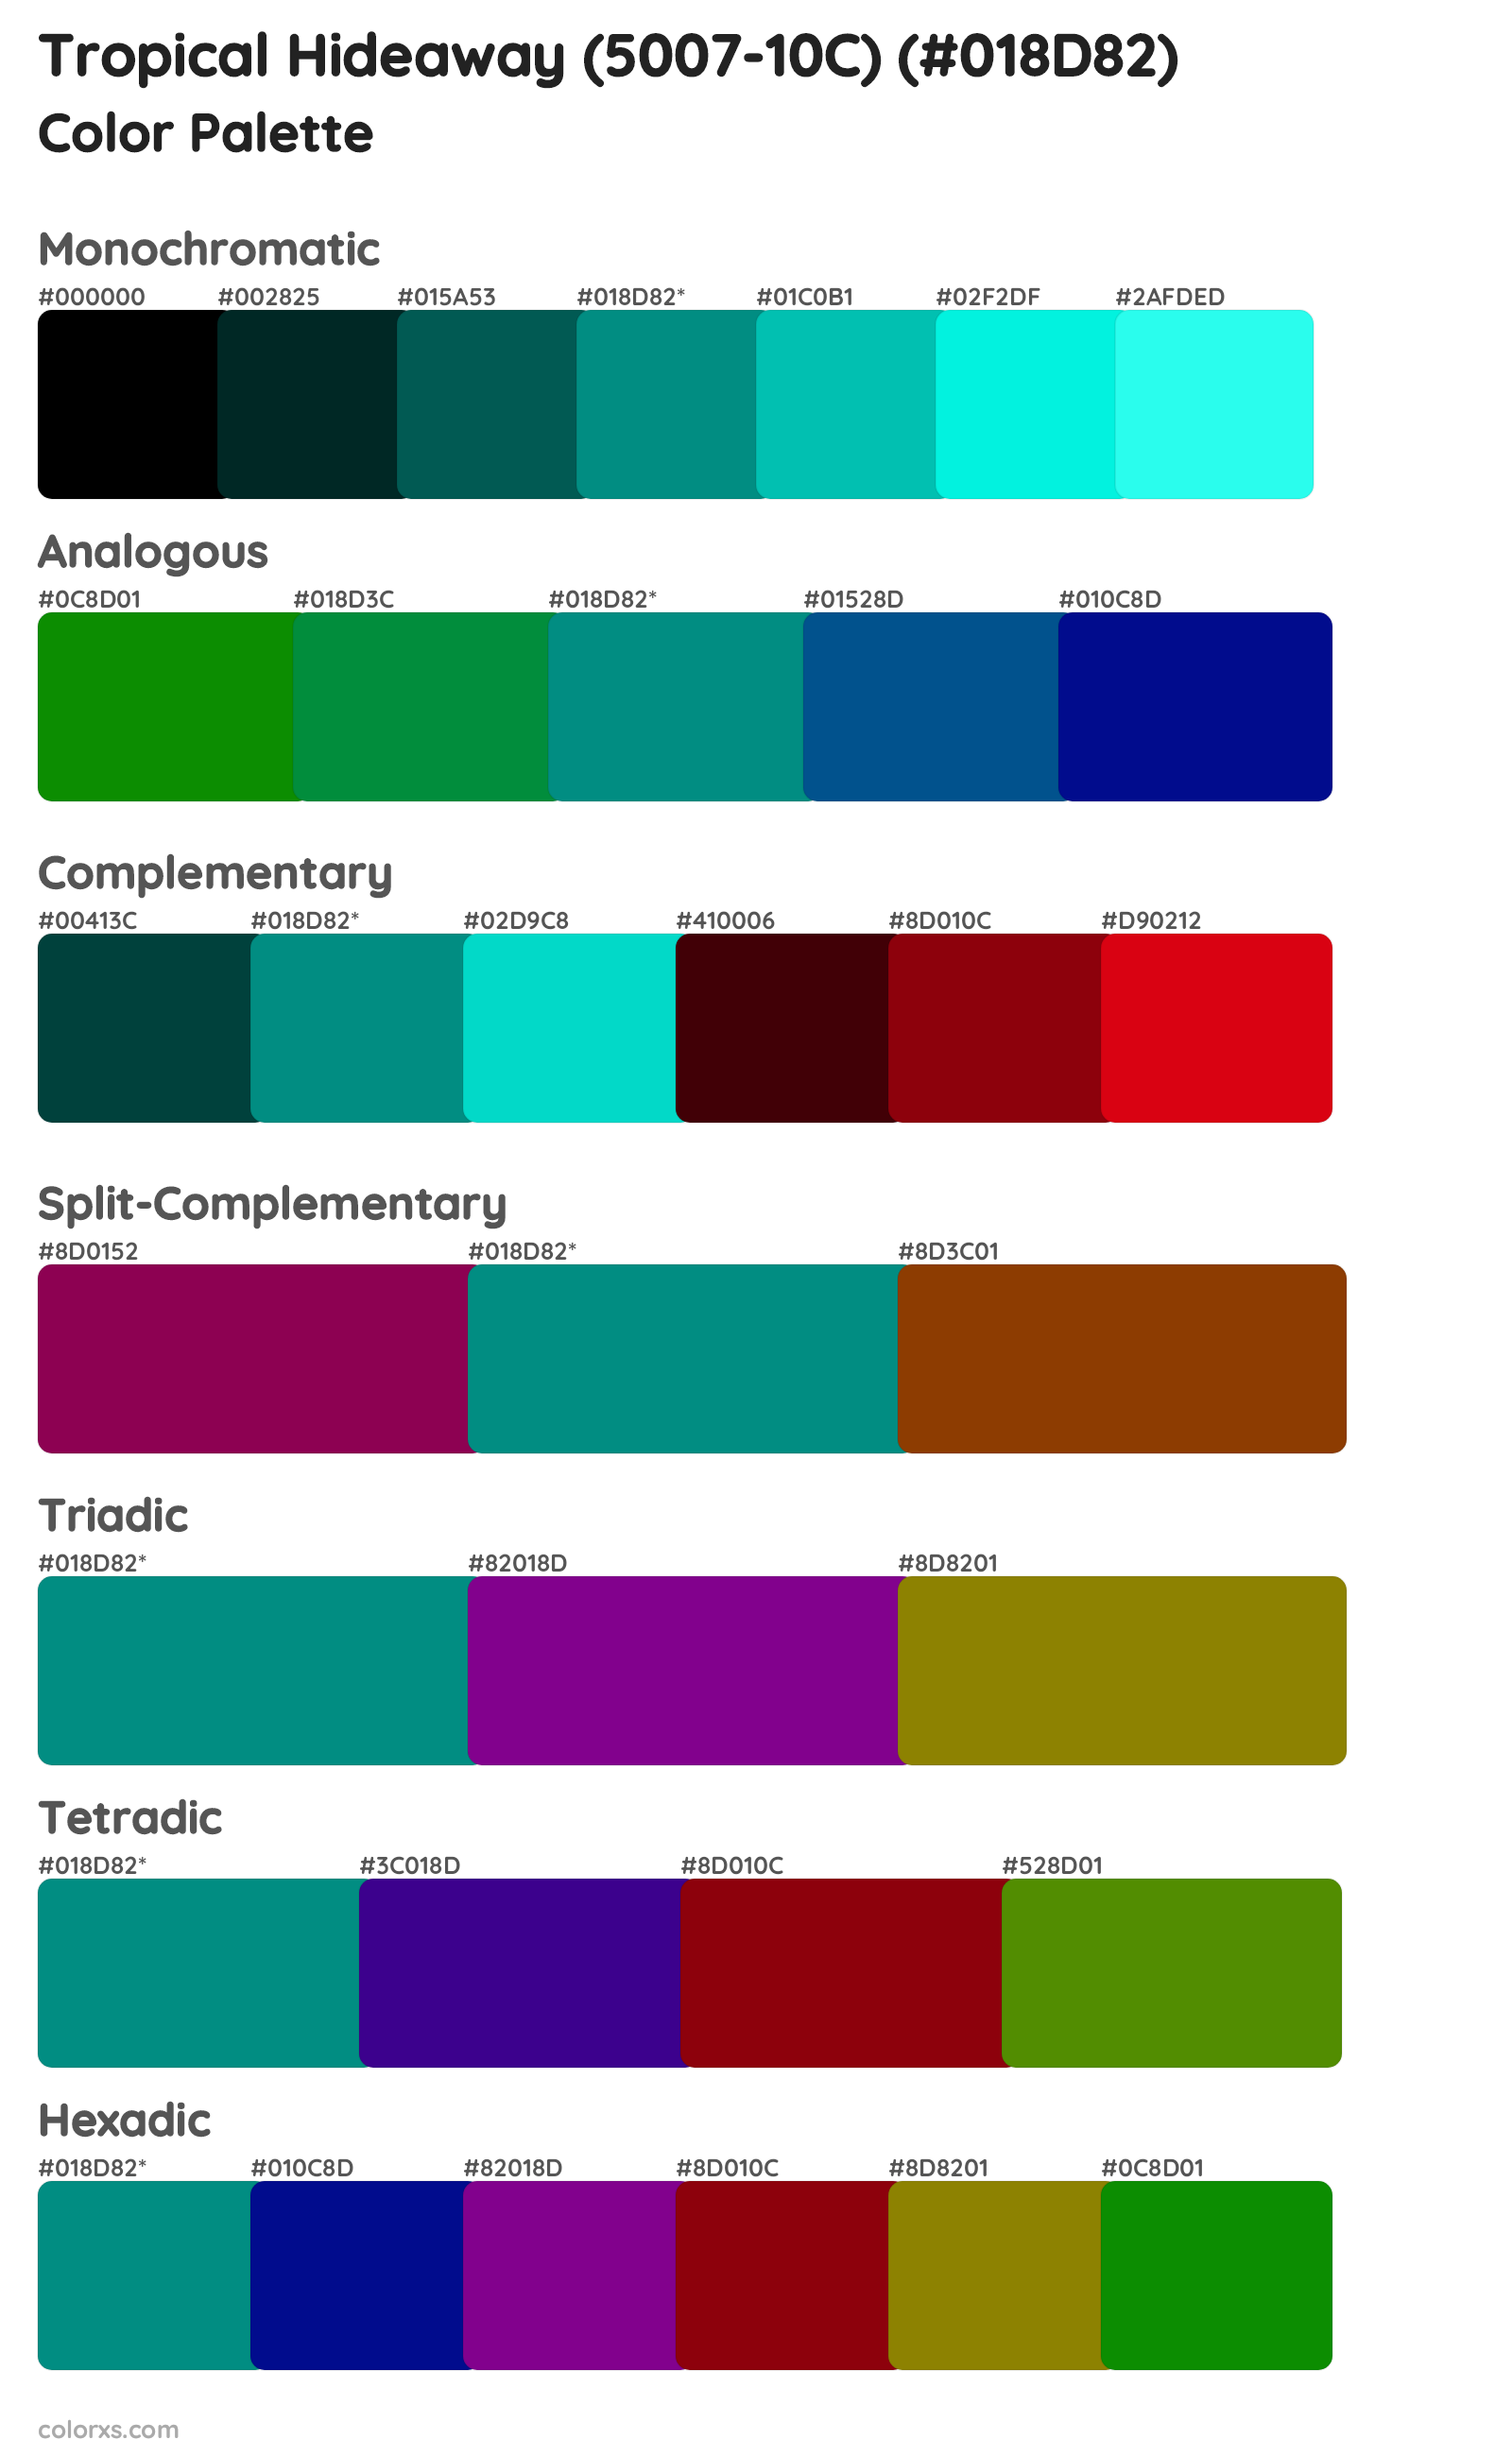 Tropical Hideaway (5007-10C) Color Scheme Palettes